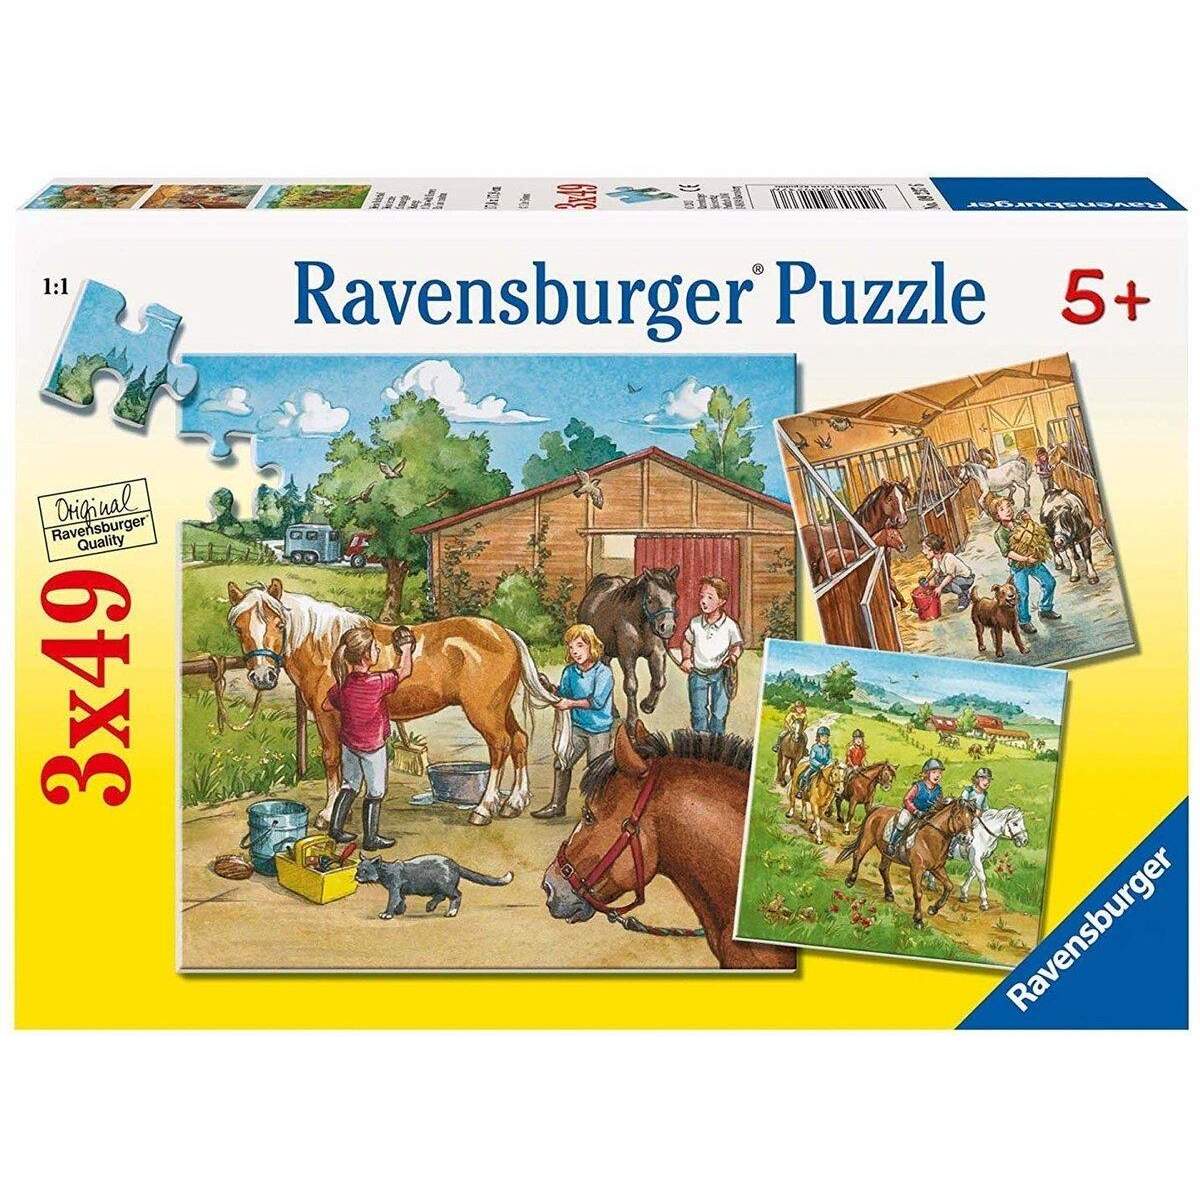 Ravensburger Puzzle Mein Reiterhof, 3 x 49 Teile